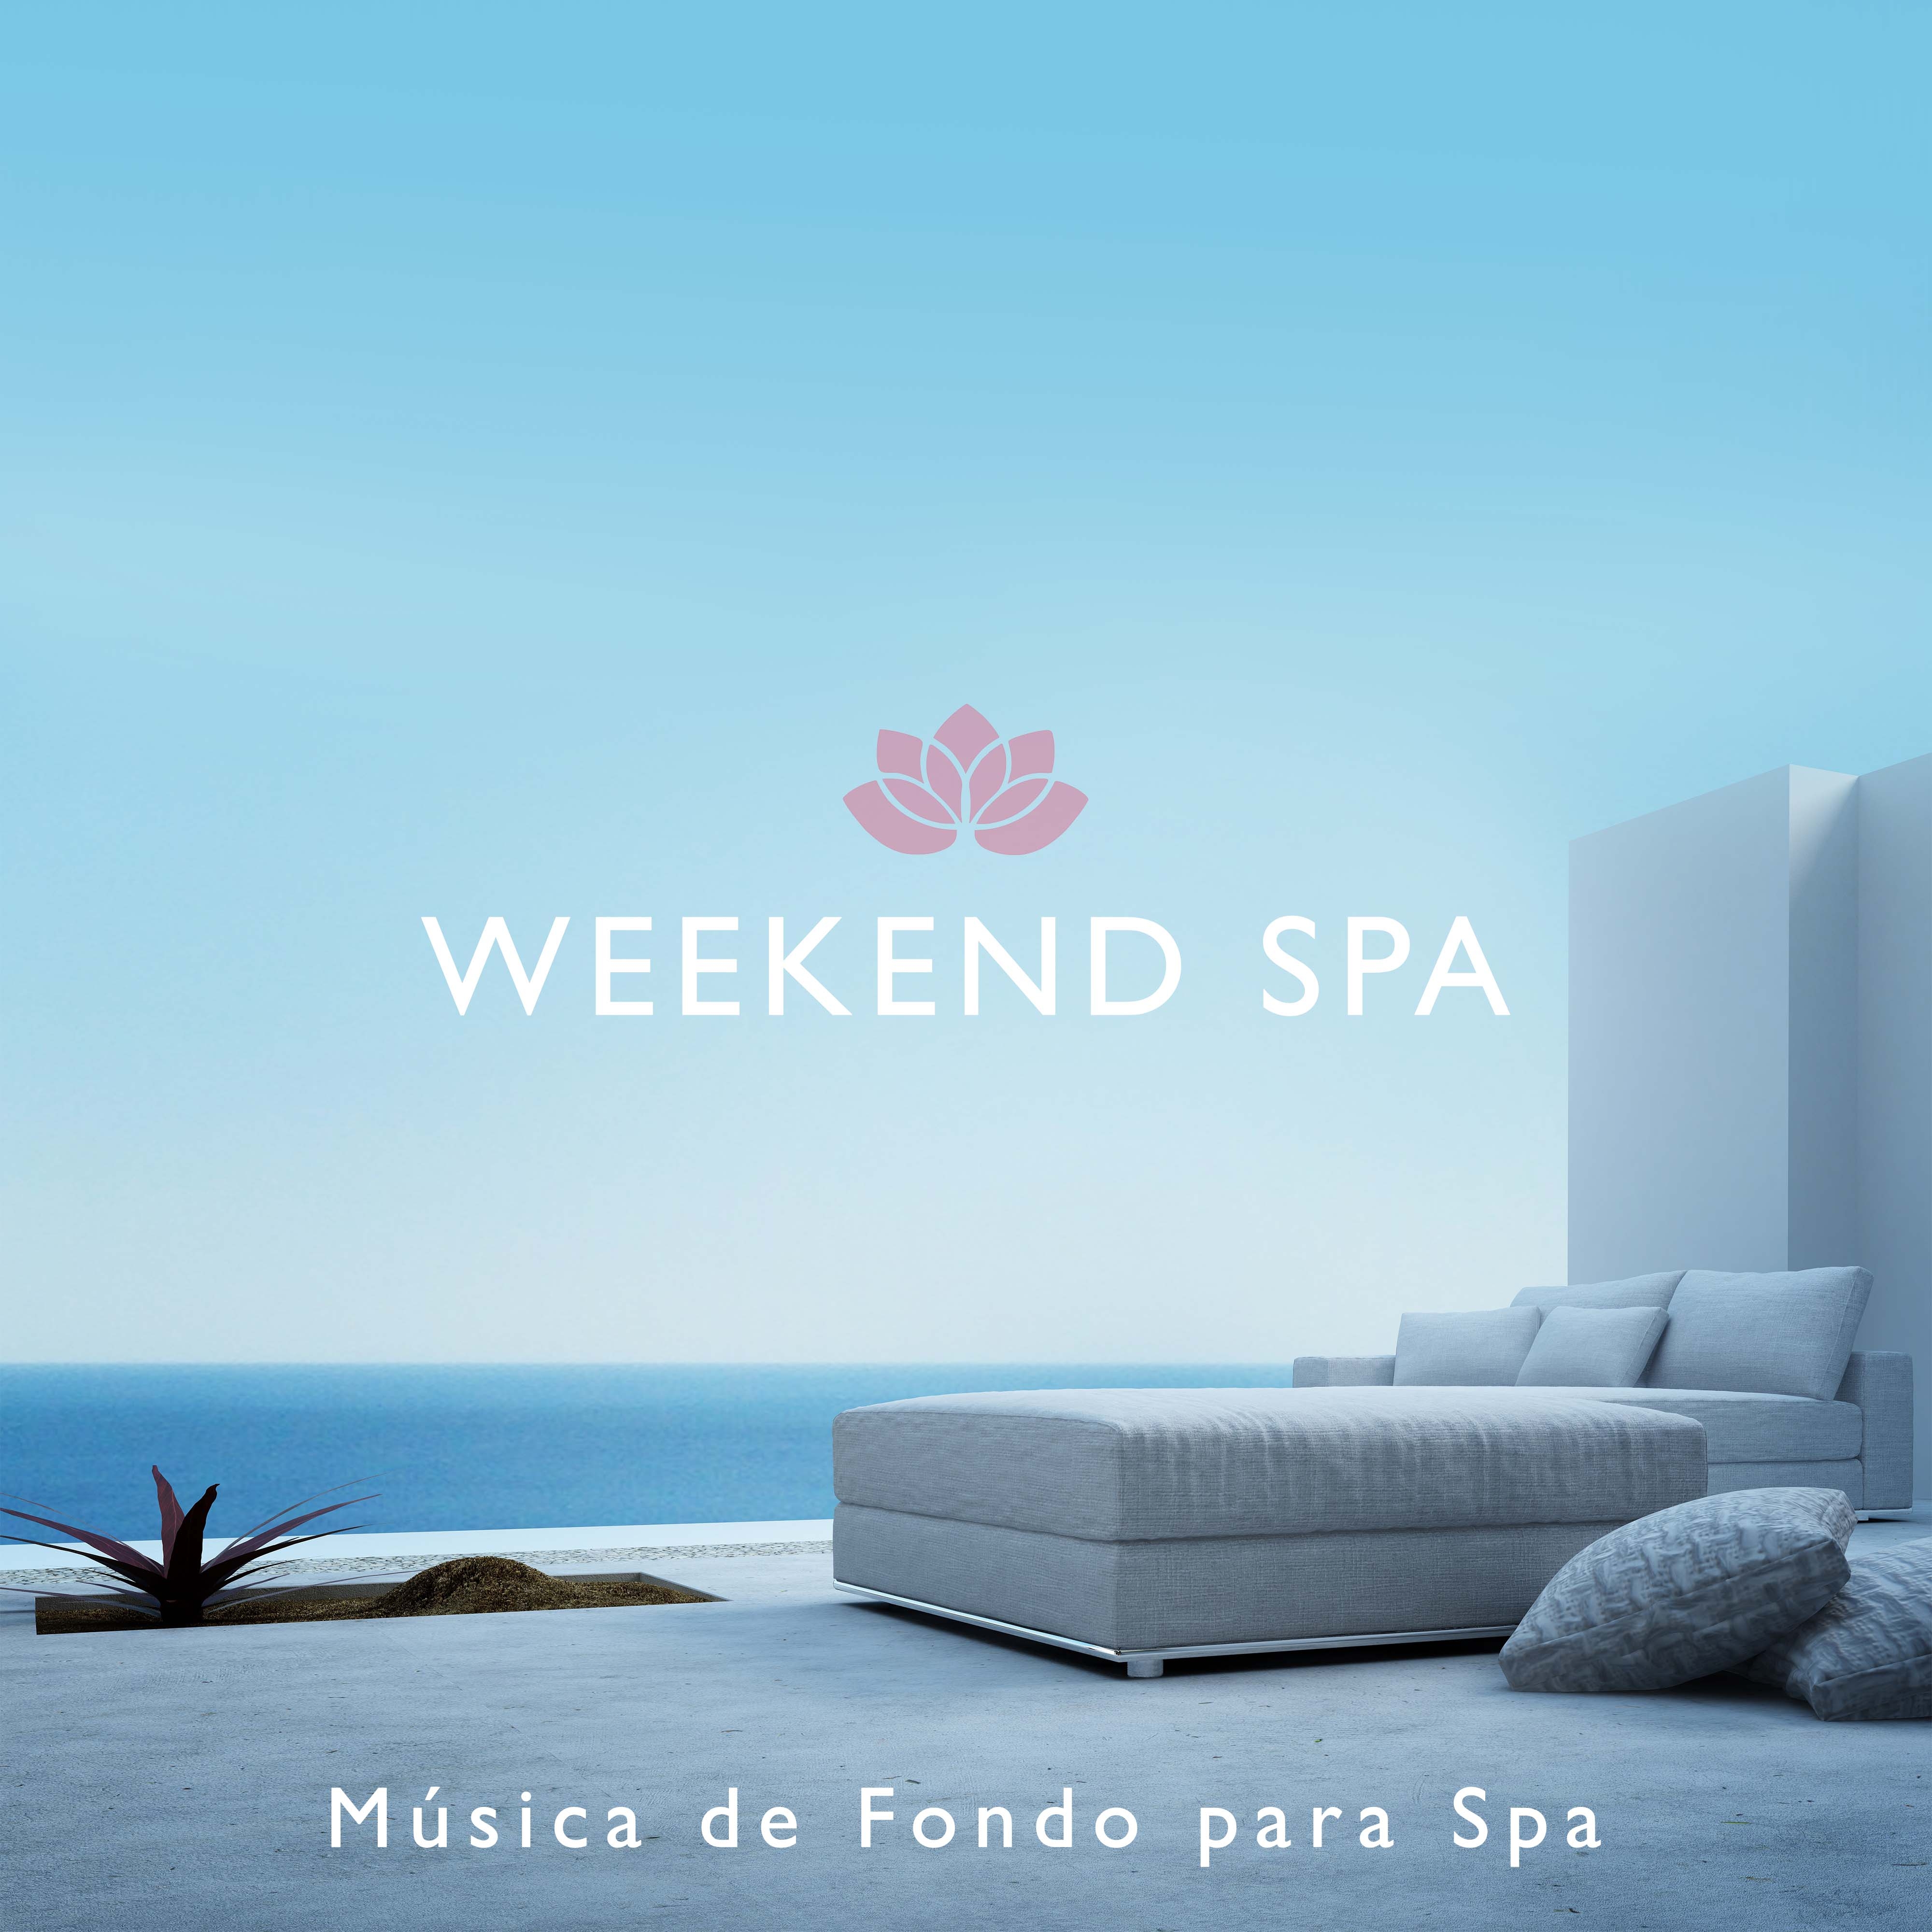 Weekend Spa  Mu sica de Fondo para Spa y Centros de Belleza y Centros de Este tica